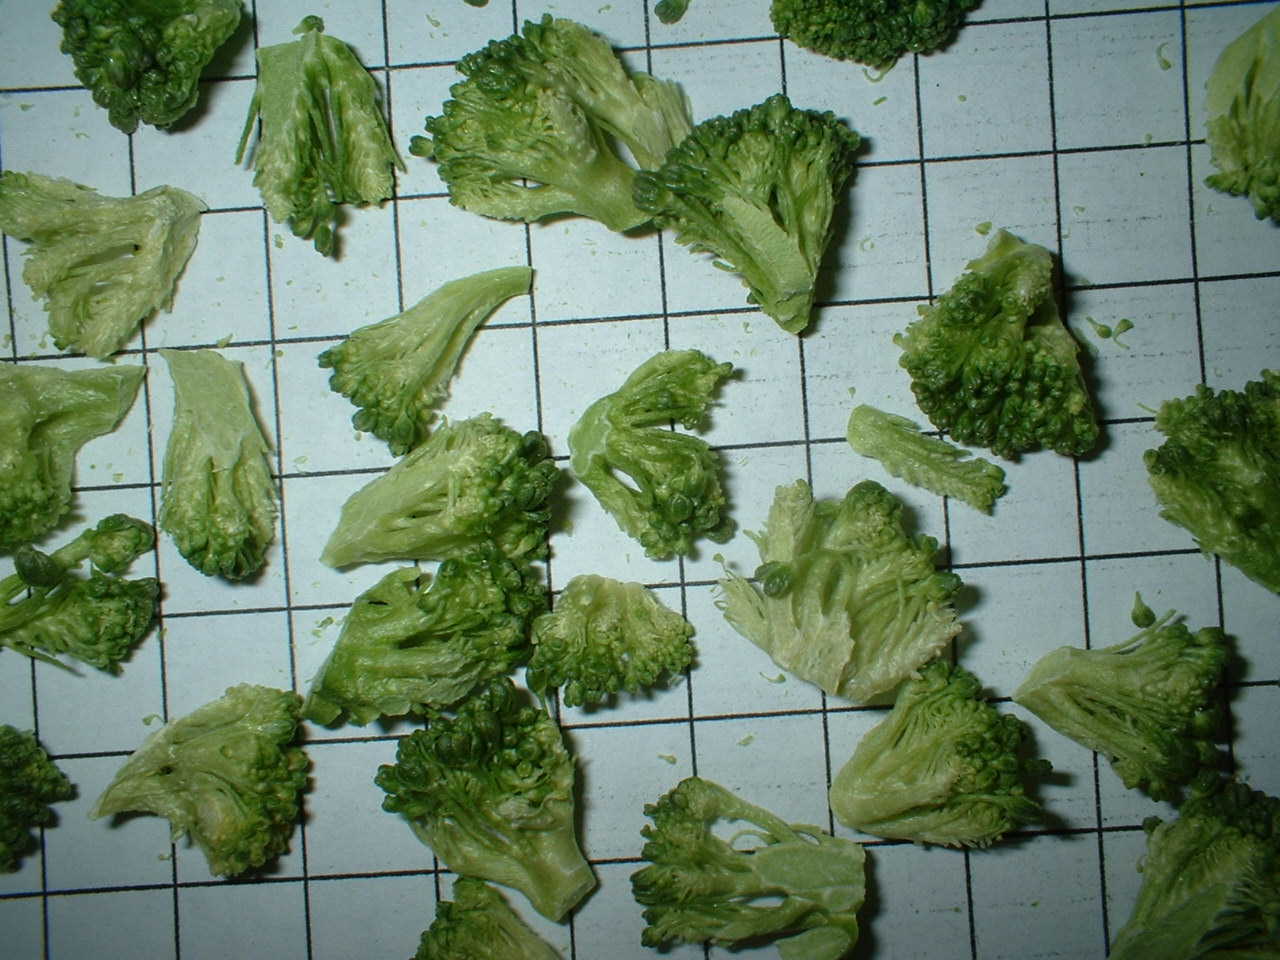 freeze dried broccoli